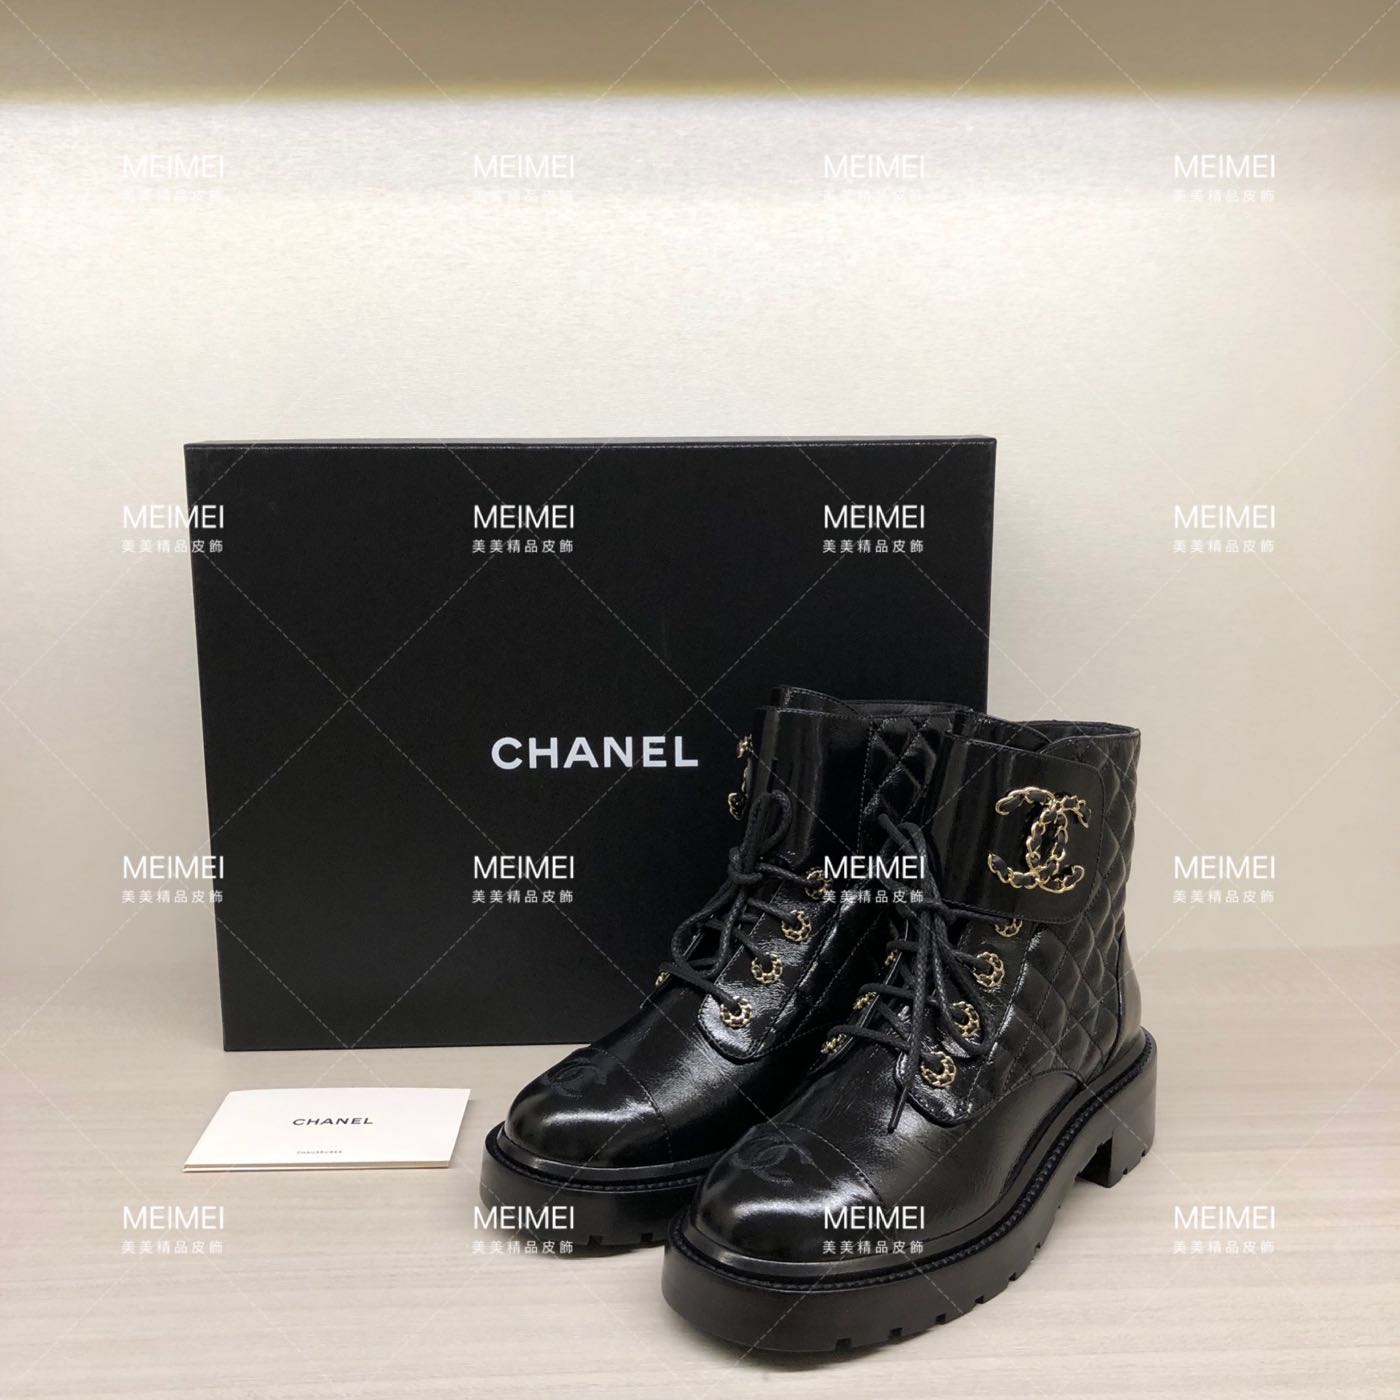 30年老店預購CHANEL 中筒靴靴子皮革黑色孫芸芸尺寸37.5 G36424 | Yahoo